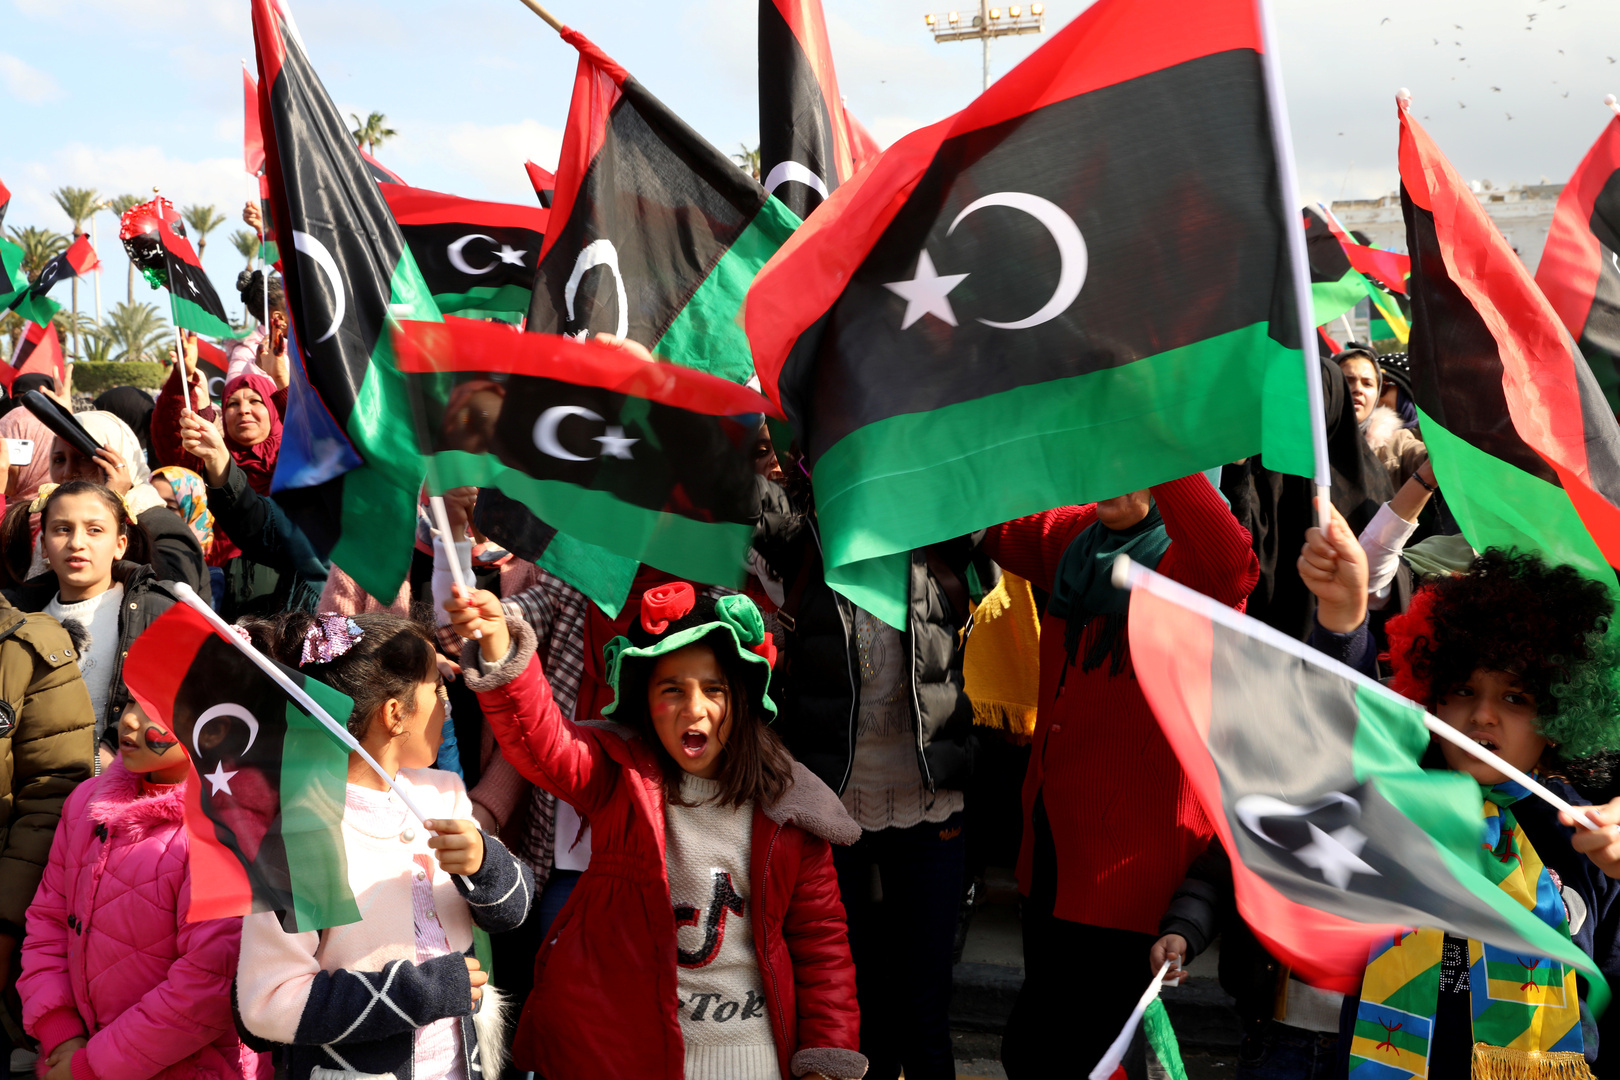 المشاركون في المشاورات الليبية في يومها الثاني: نسعى لإيجاد حل سياسي سملي للنزاع